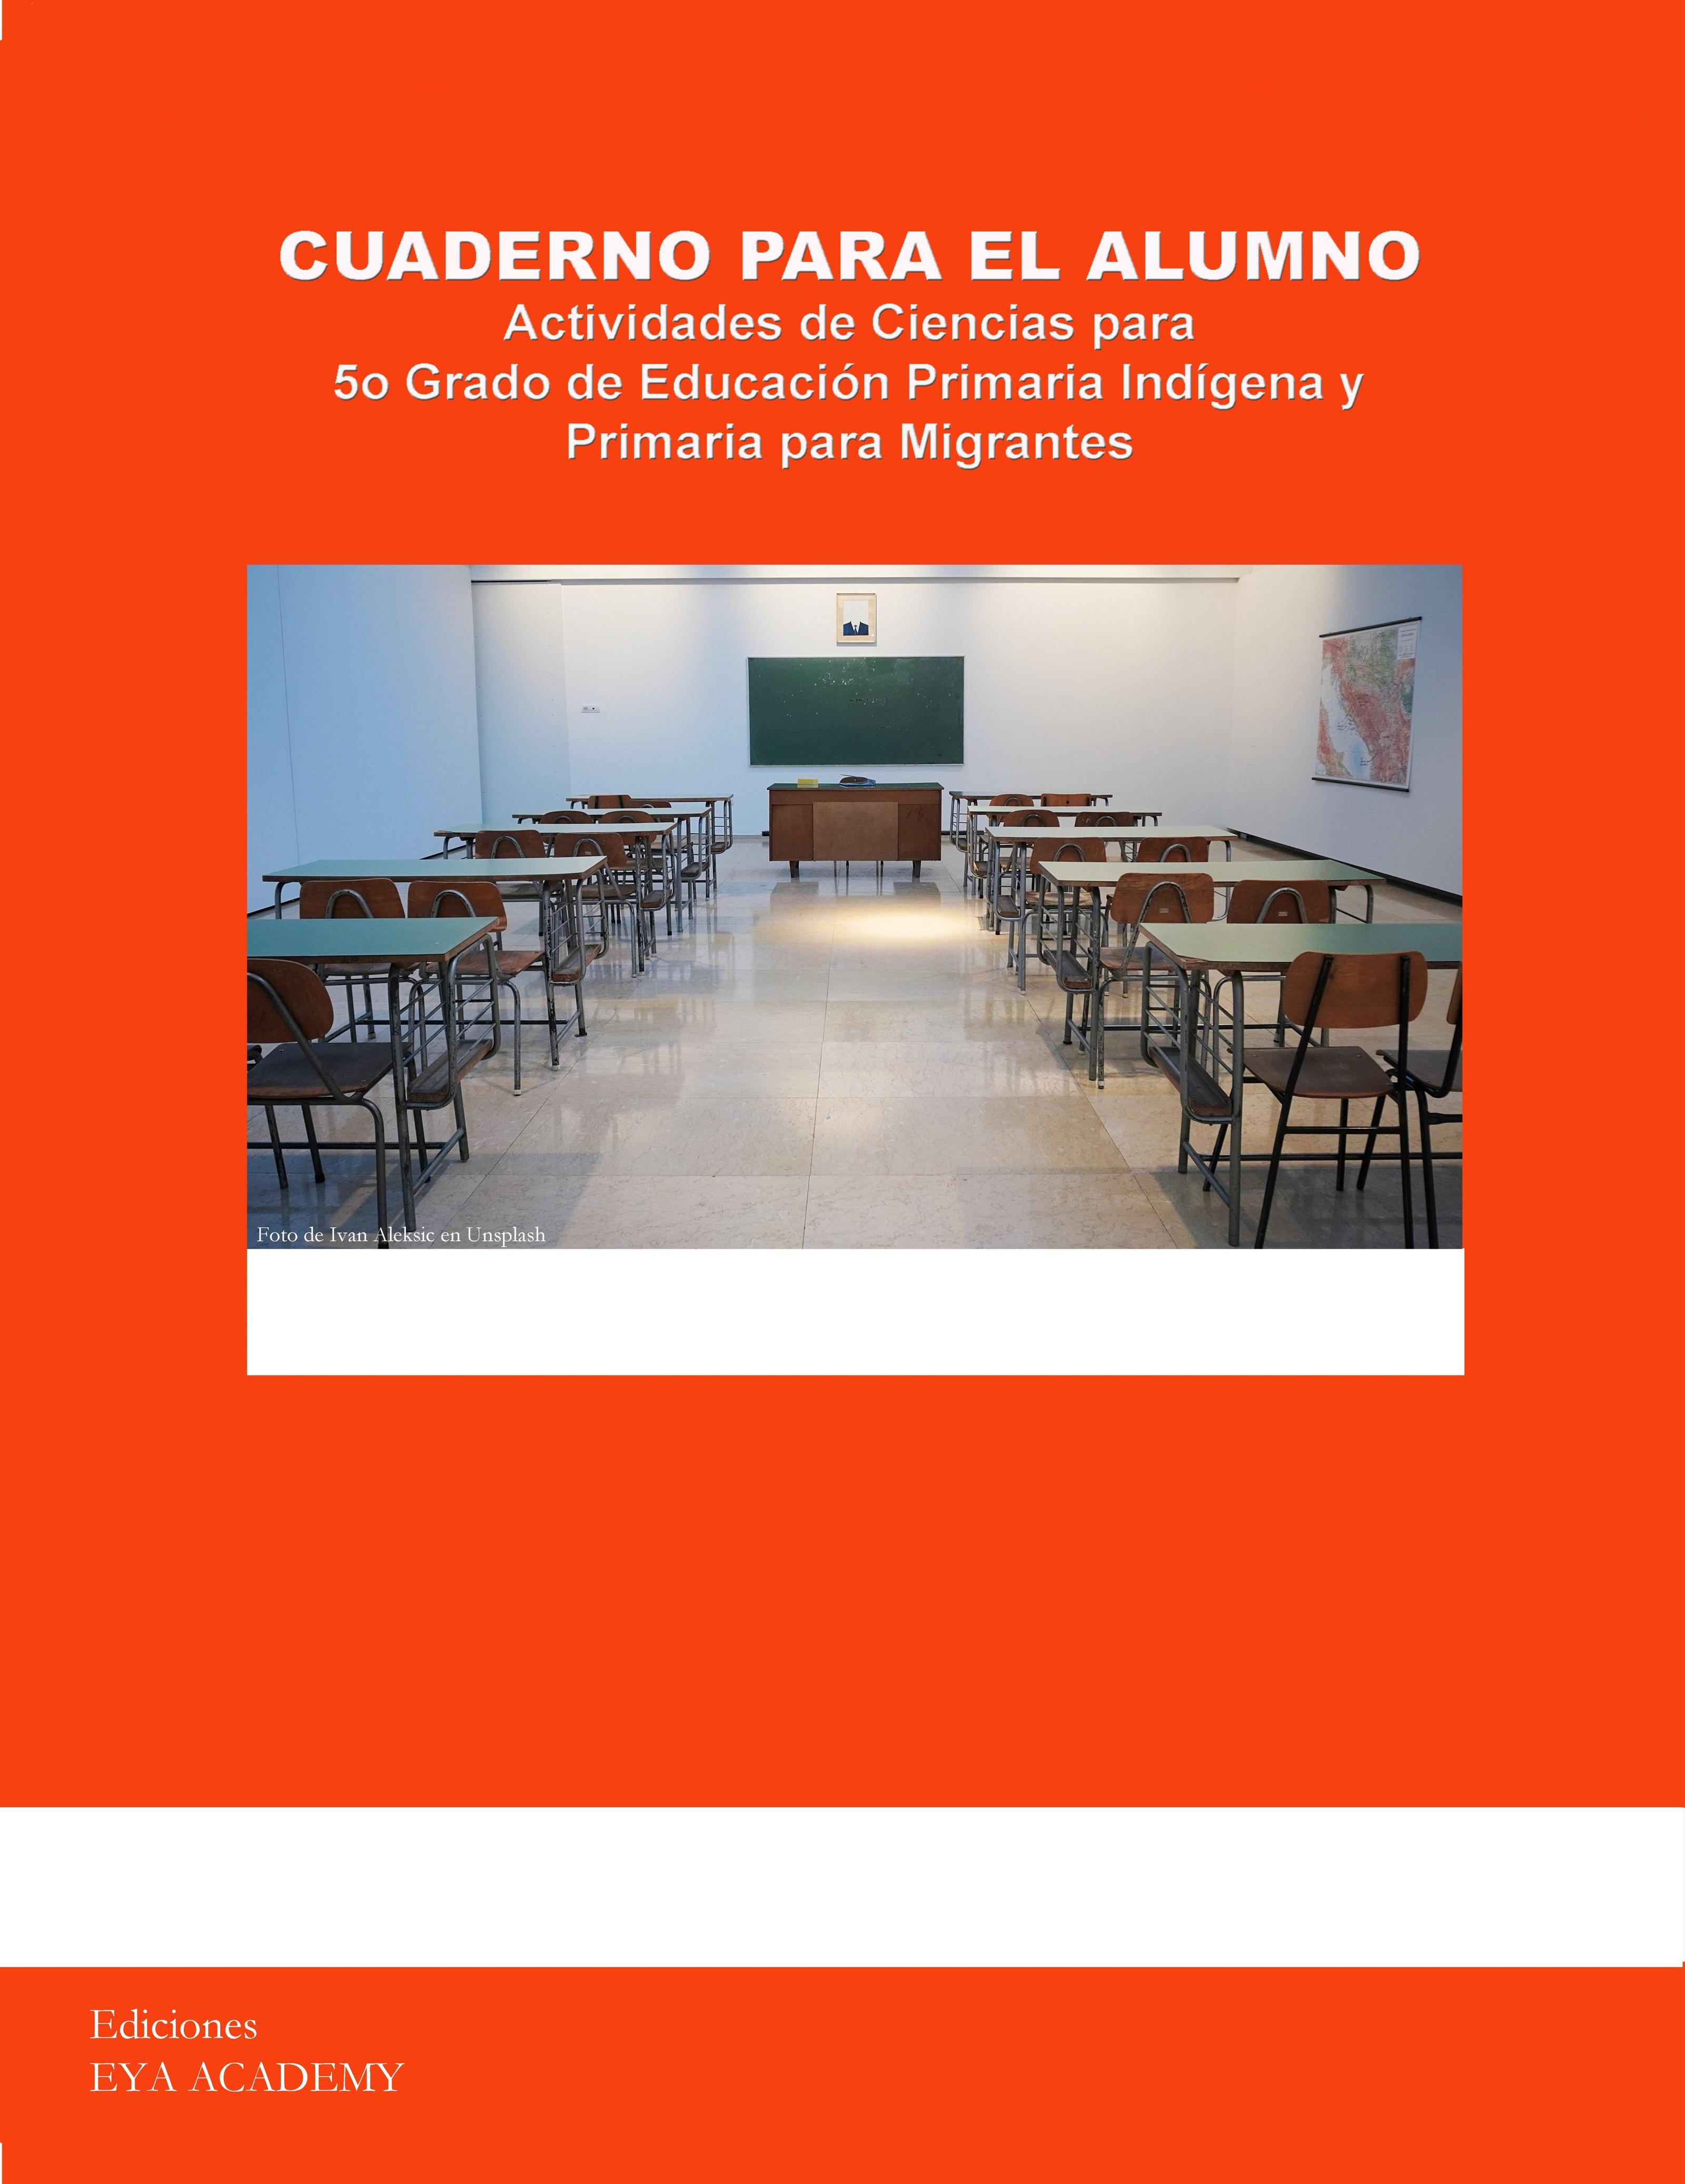 Cuaderno para el Alumno Actividades de Ciencias para 5º Grado de Educación Primaria Indígena y Primaria para Migrantes